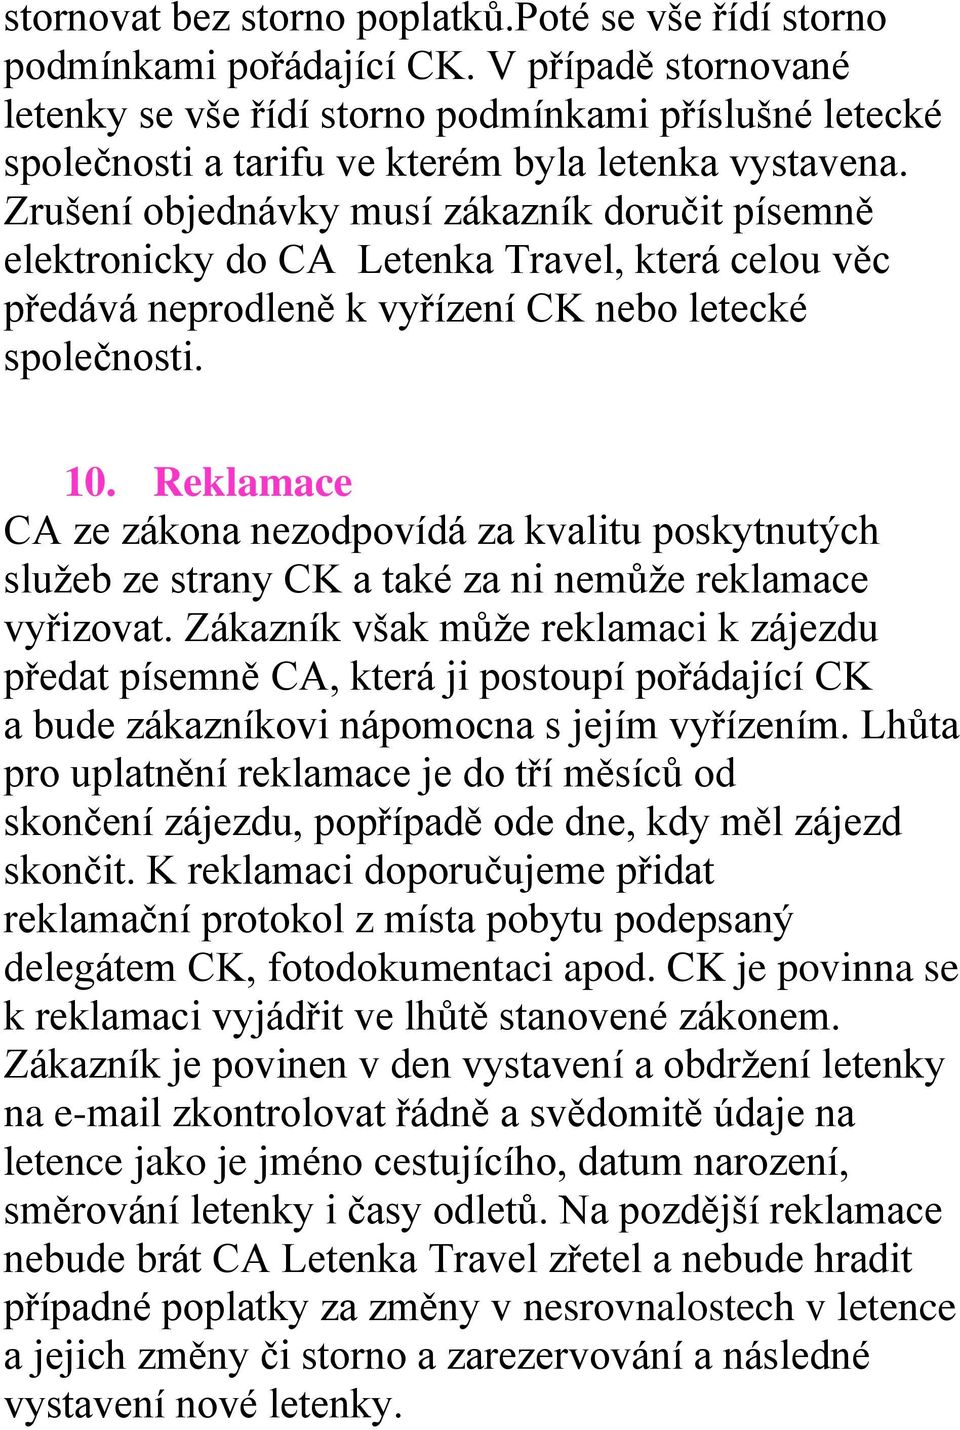 Zrušení objednávky musí zákazník doručit písemně elektronicky do CA Letenka Travel, která celou věc předává neprodleně k vyřízení CK nebo letecké společnosti. 10.